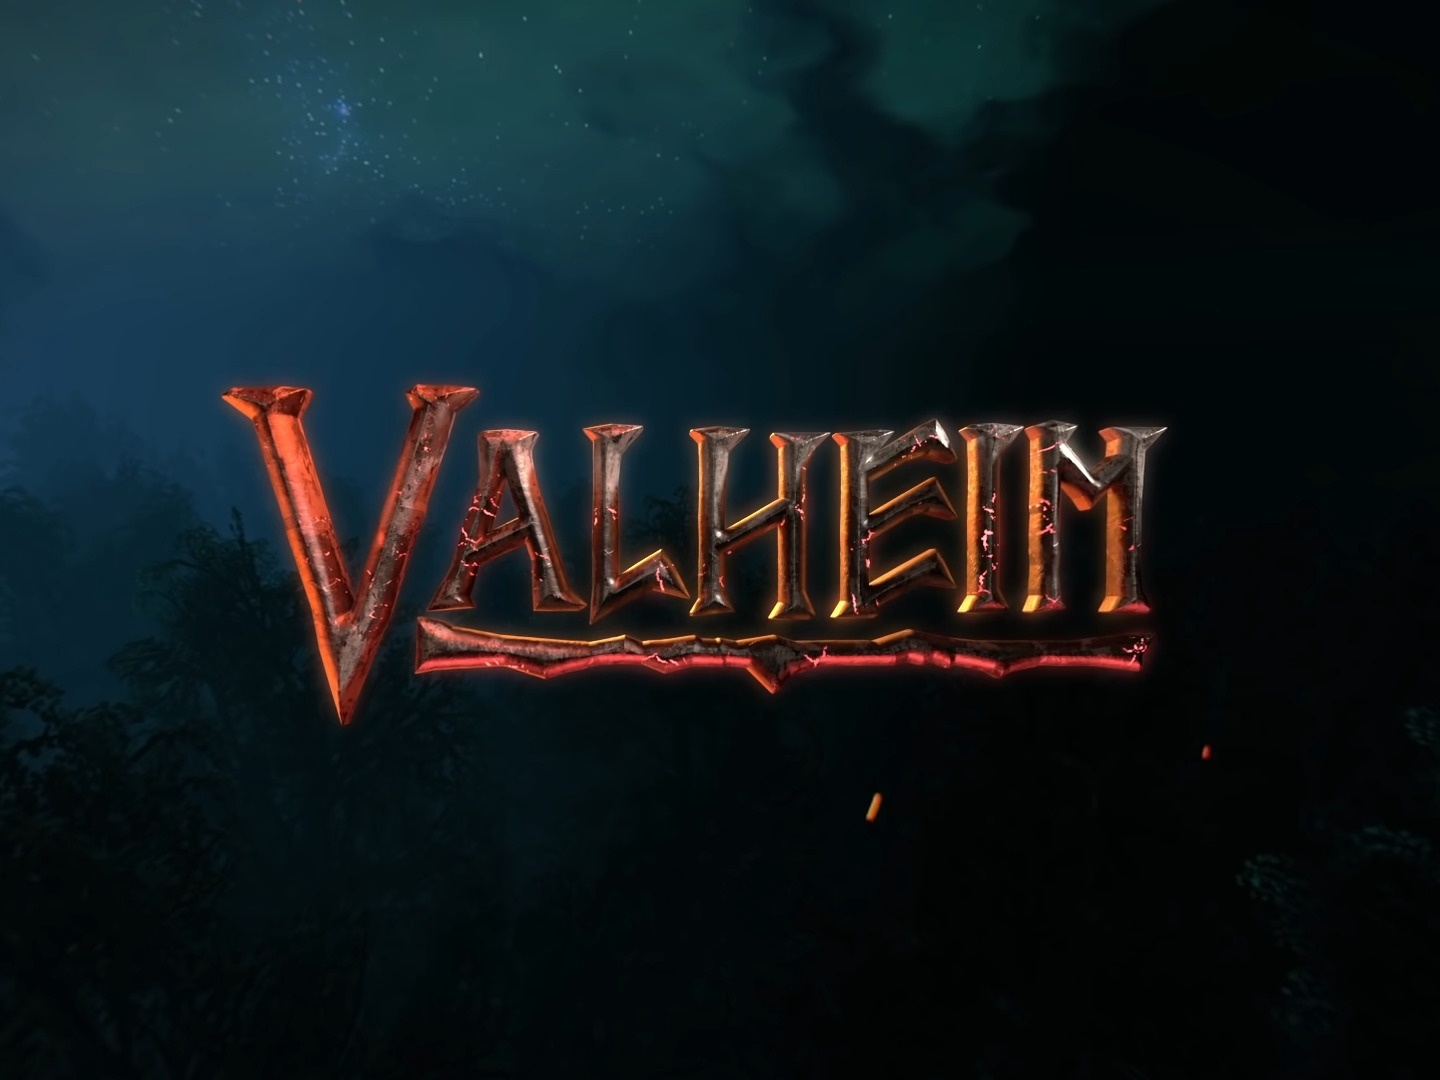 Valheim: Por que o jogo está tão popular no Steam? - 20/02/2021 - UOL Start